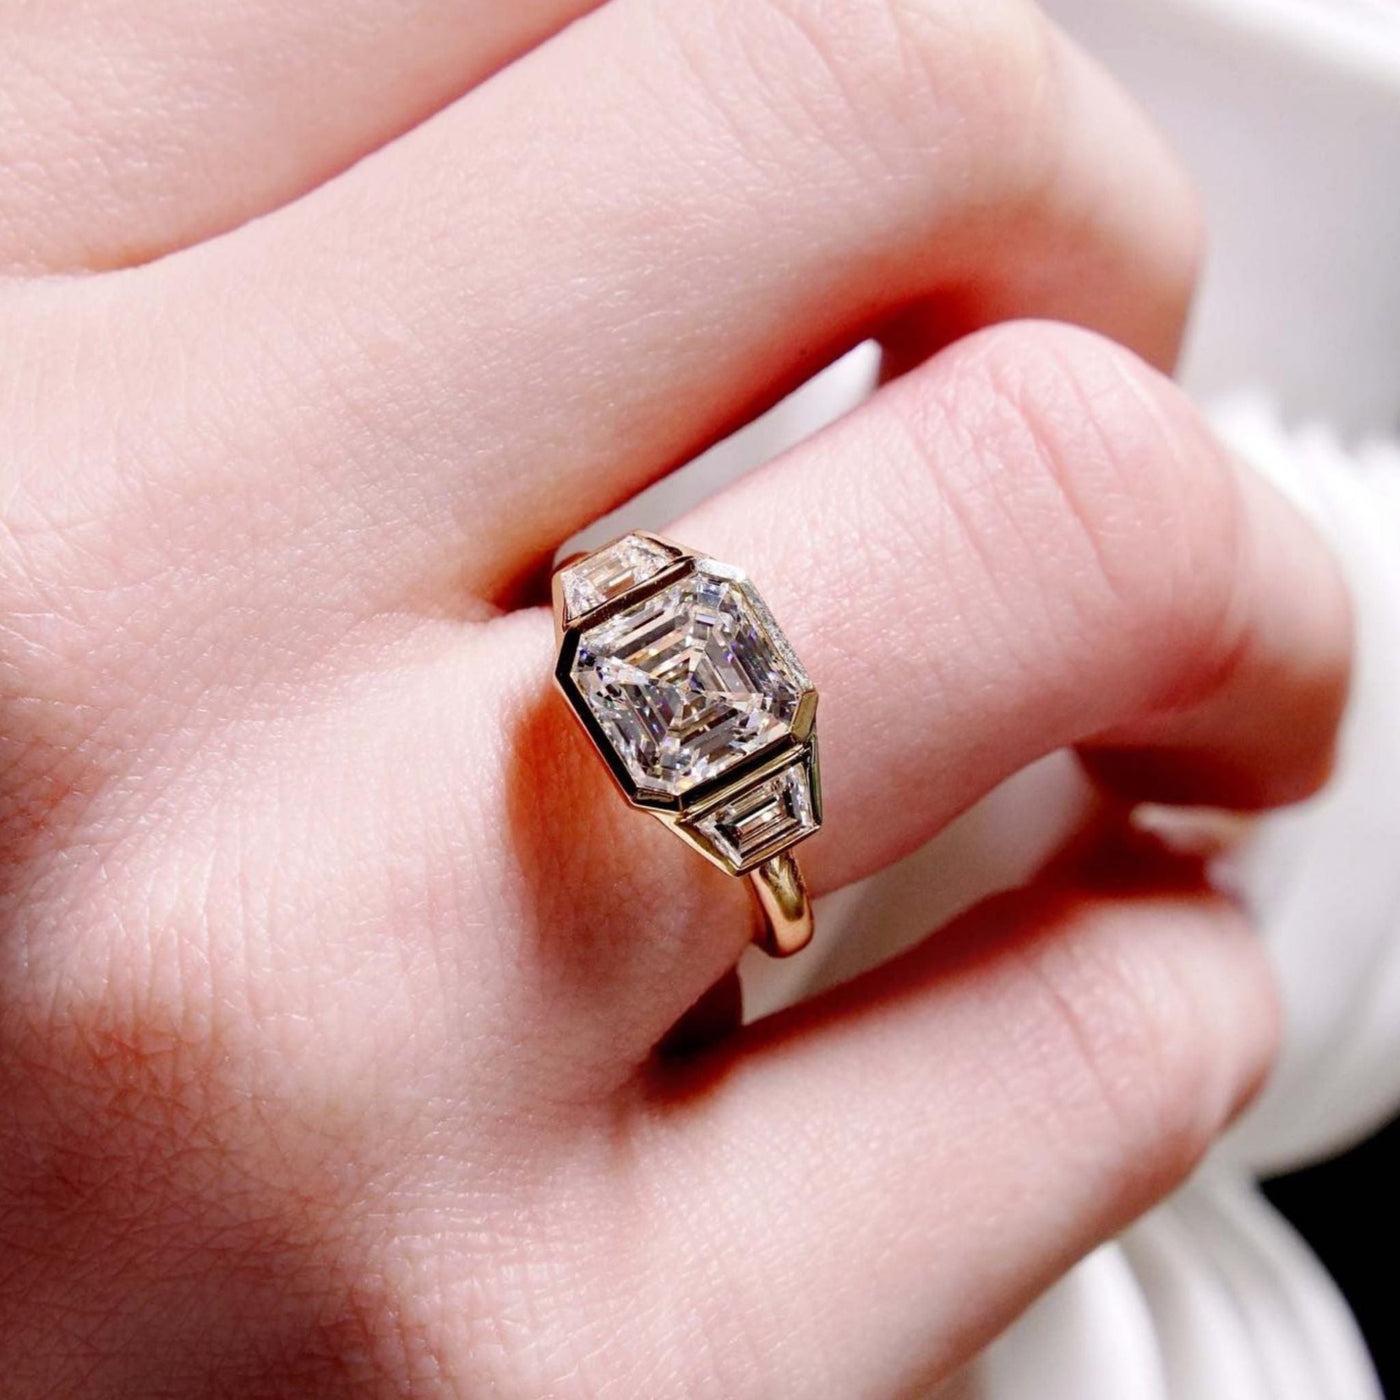 3 Carat Diamond Ring Asscher Cut - Shapiro Diamonds